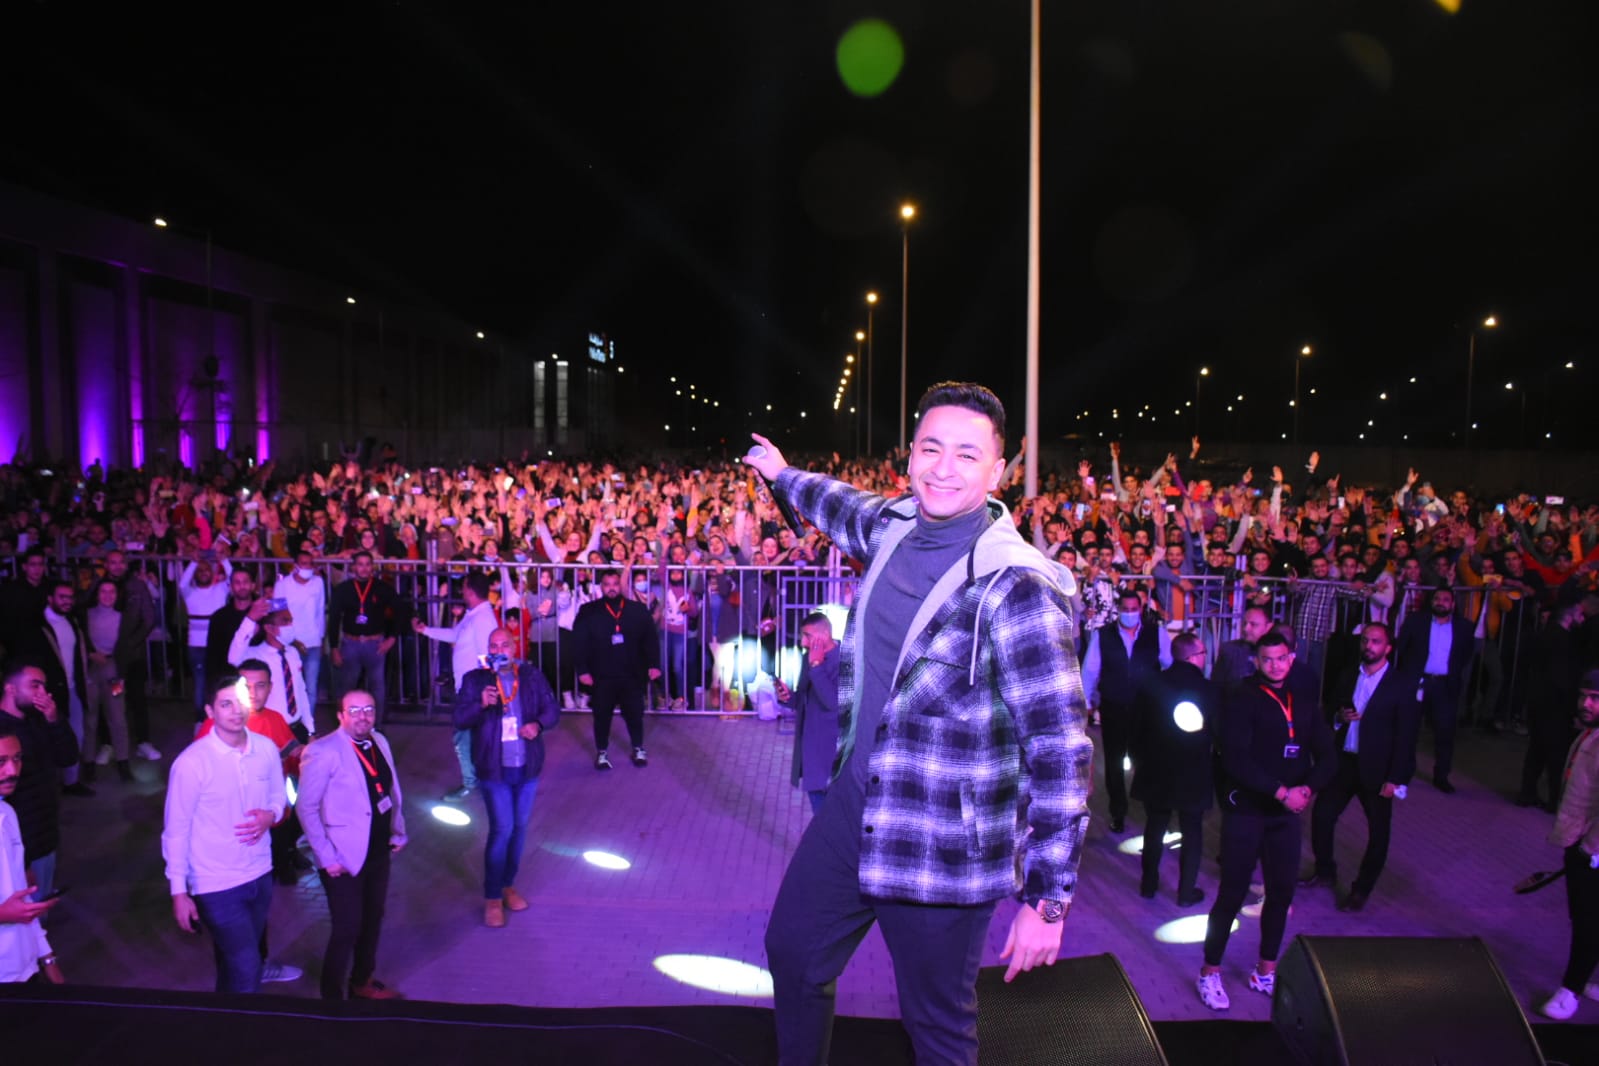 حمادة هلال يشعل الأجواء وسط الآلاف في حفل طنطا (4)